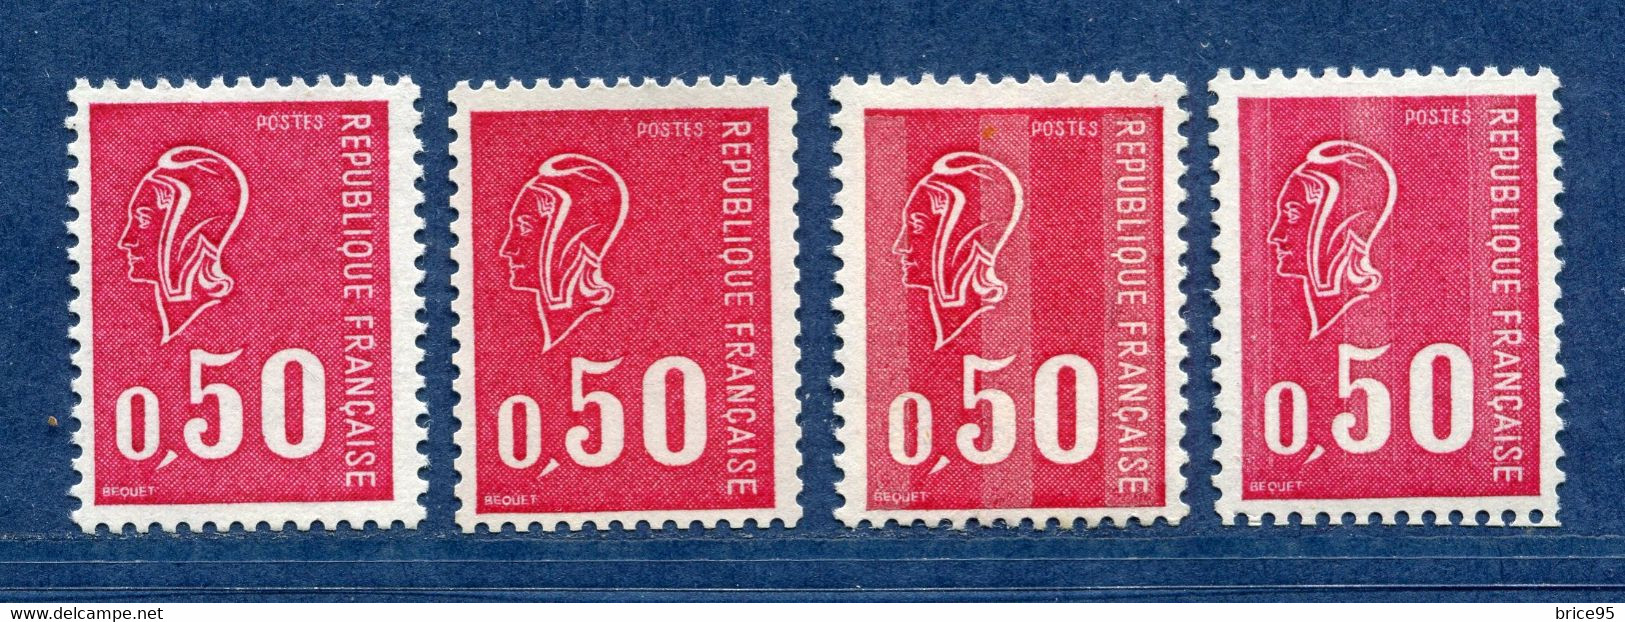 ⭐ France - Variété - YT N° 1664 B - Numéro Rouge - Couleurs - Pétouilles - Neuf Sans Charnière - 1971 ⭐ - Ongebruikt